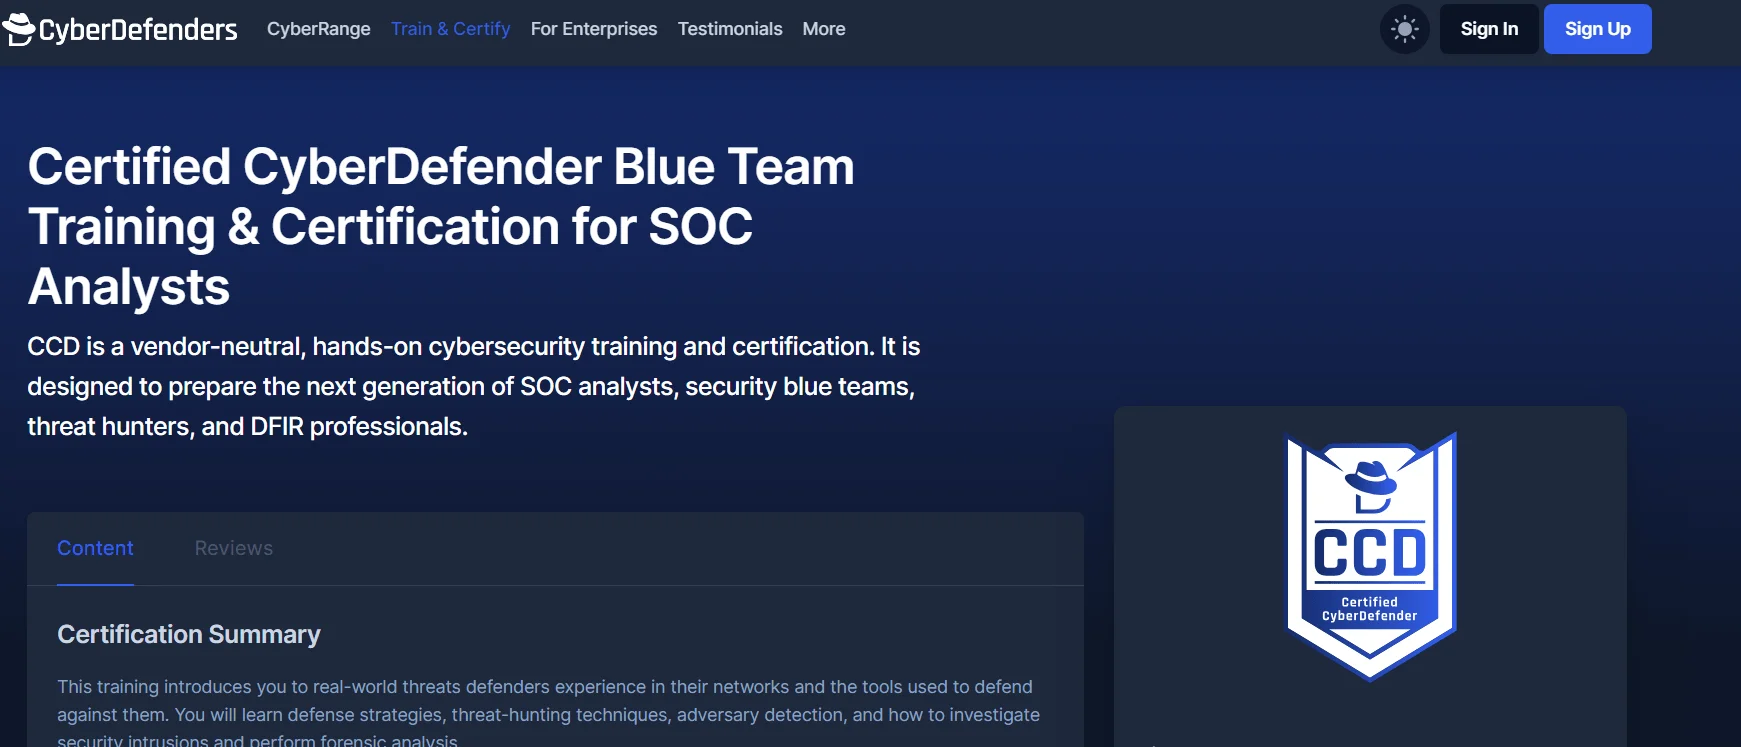 CyberDefenders CCD certification program